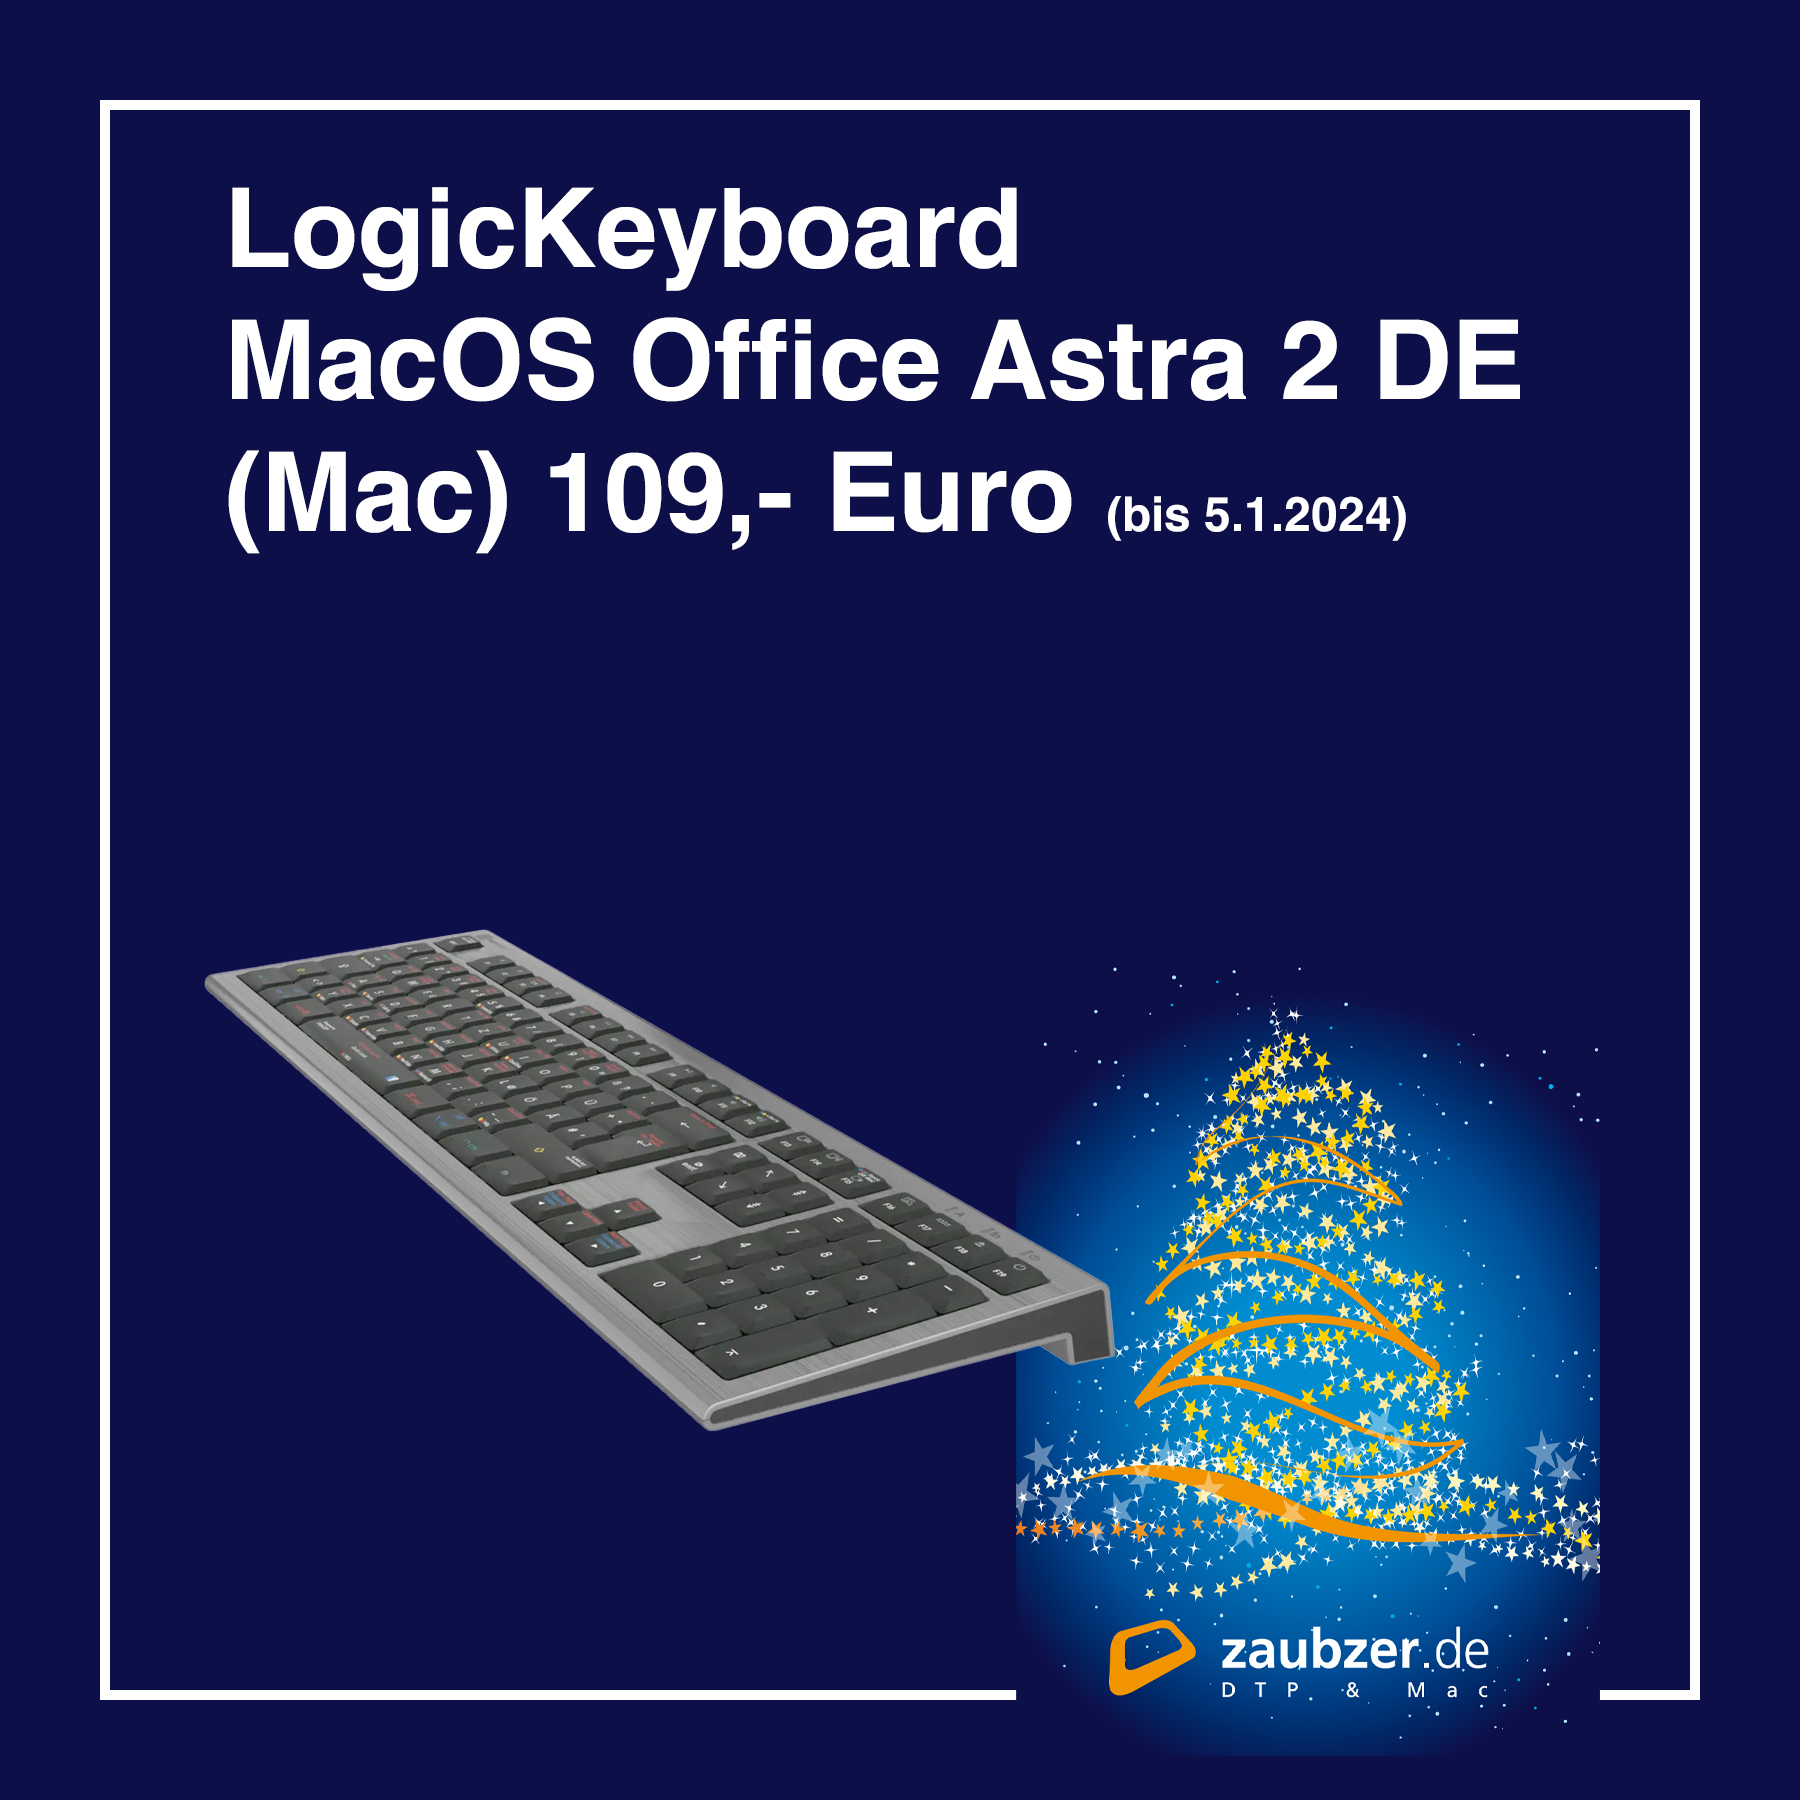 LogicKeyboard MacOS Office Astra 2 DE (Mac) - Weihnachtsaktion - zaubzer.de Mannheim